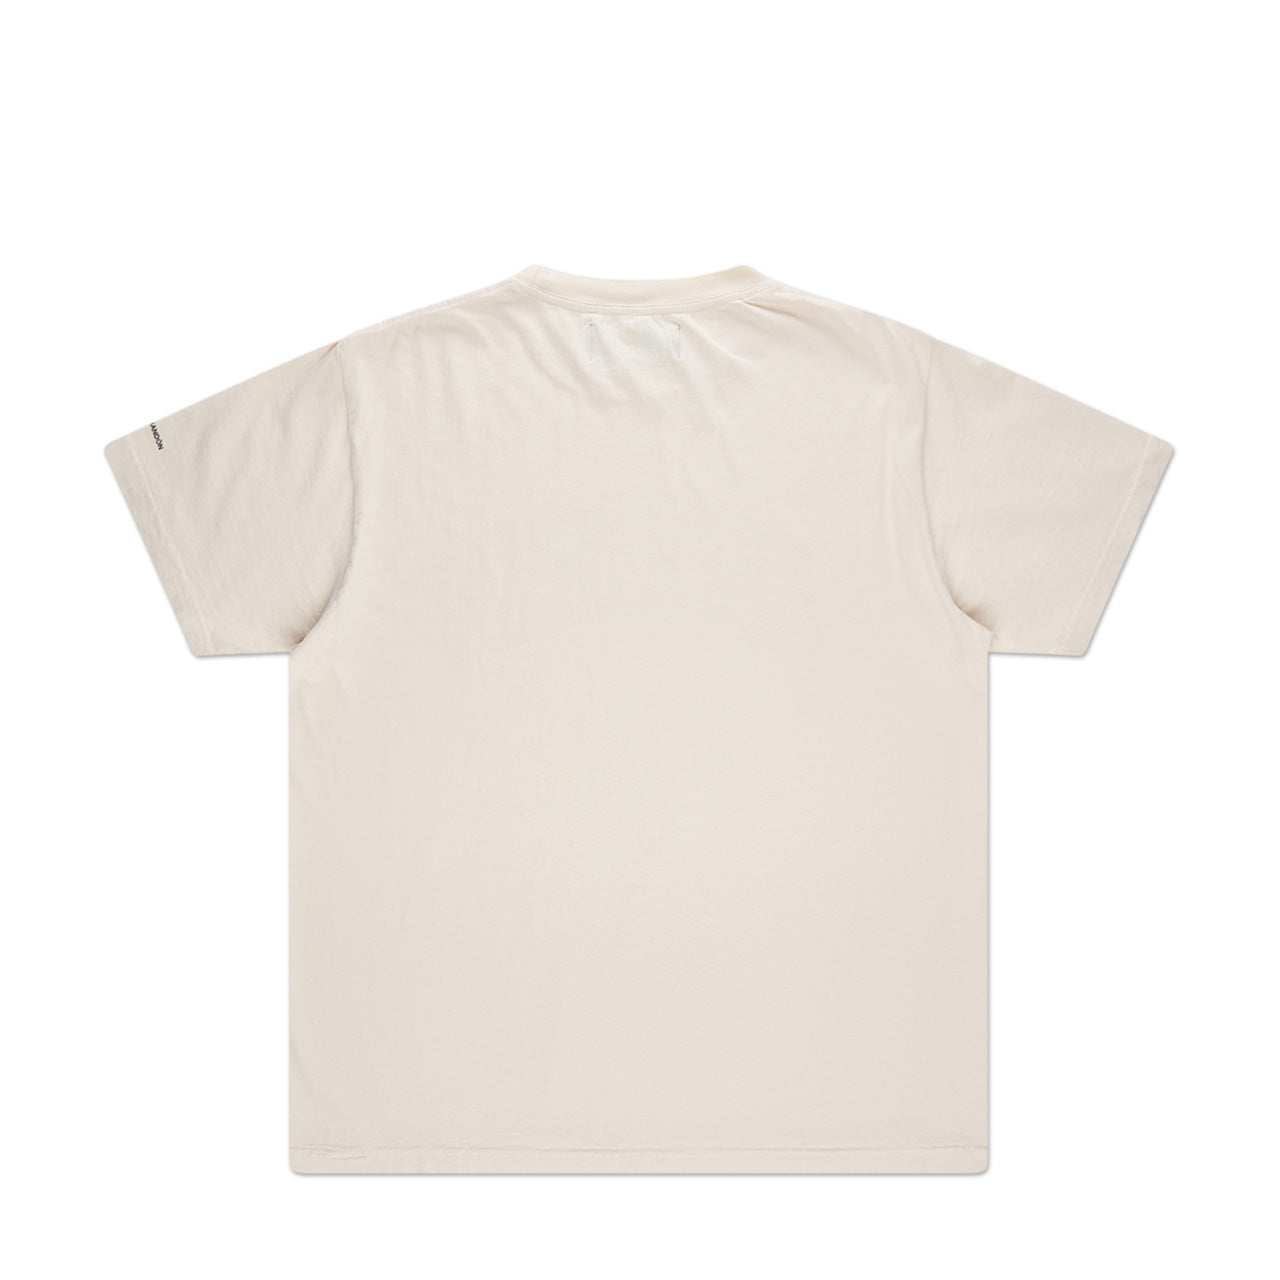 bianca chandôn anxiety t-shirt (cream)